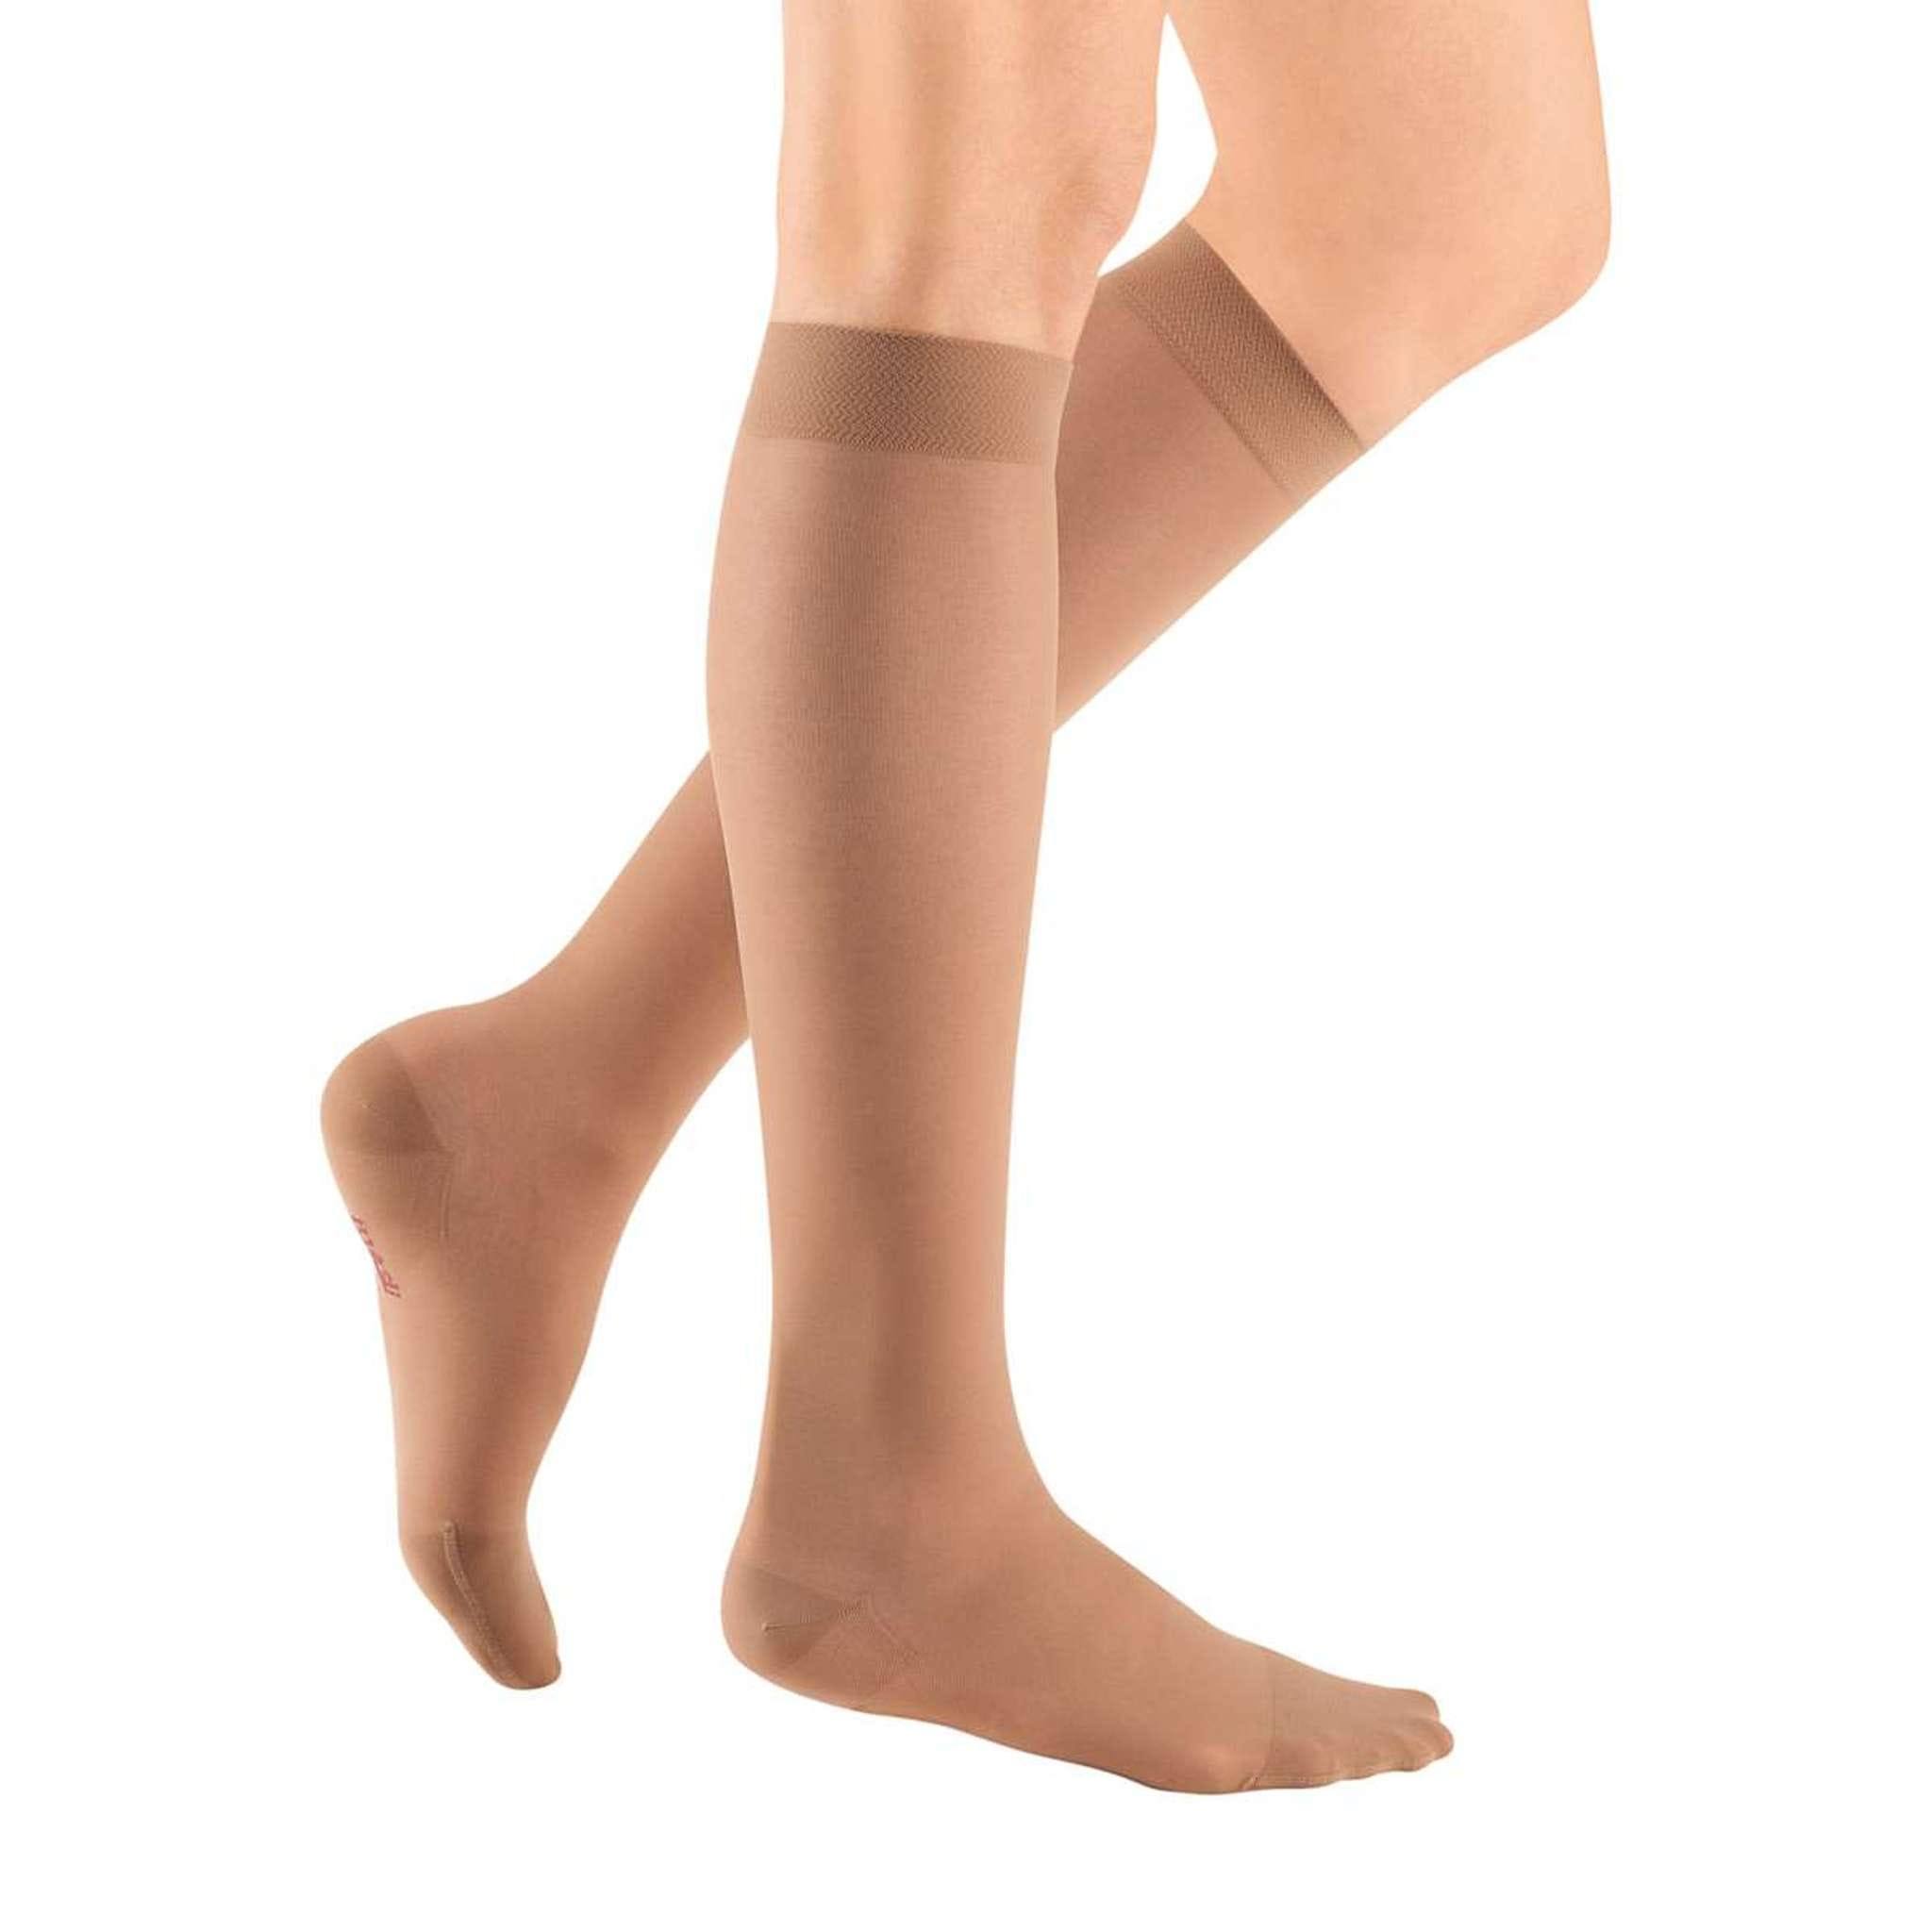 Mediven Women's Sheer and Soft Knee Highs Stockings - Natural, 15-20mmHg, V